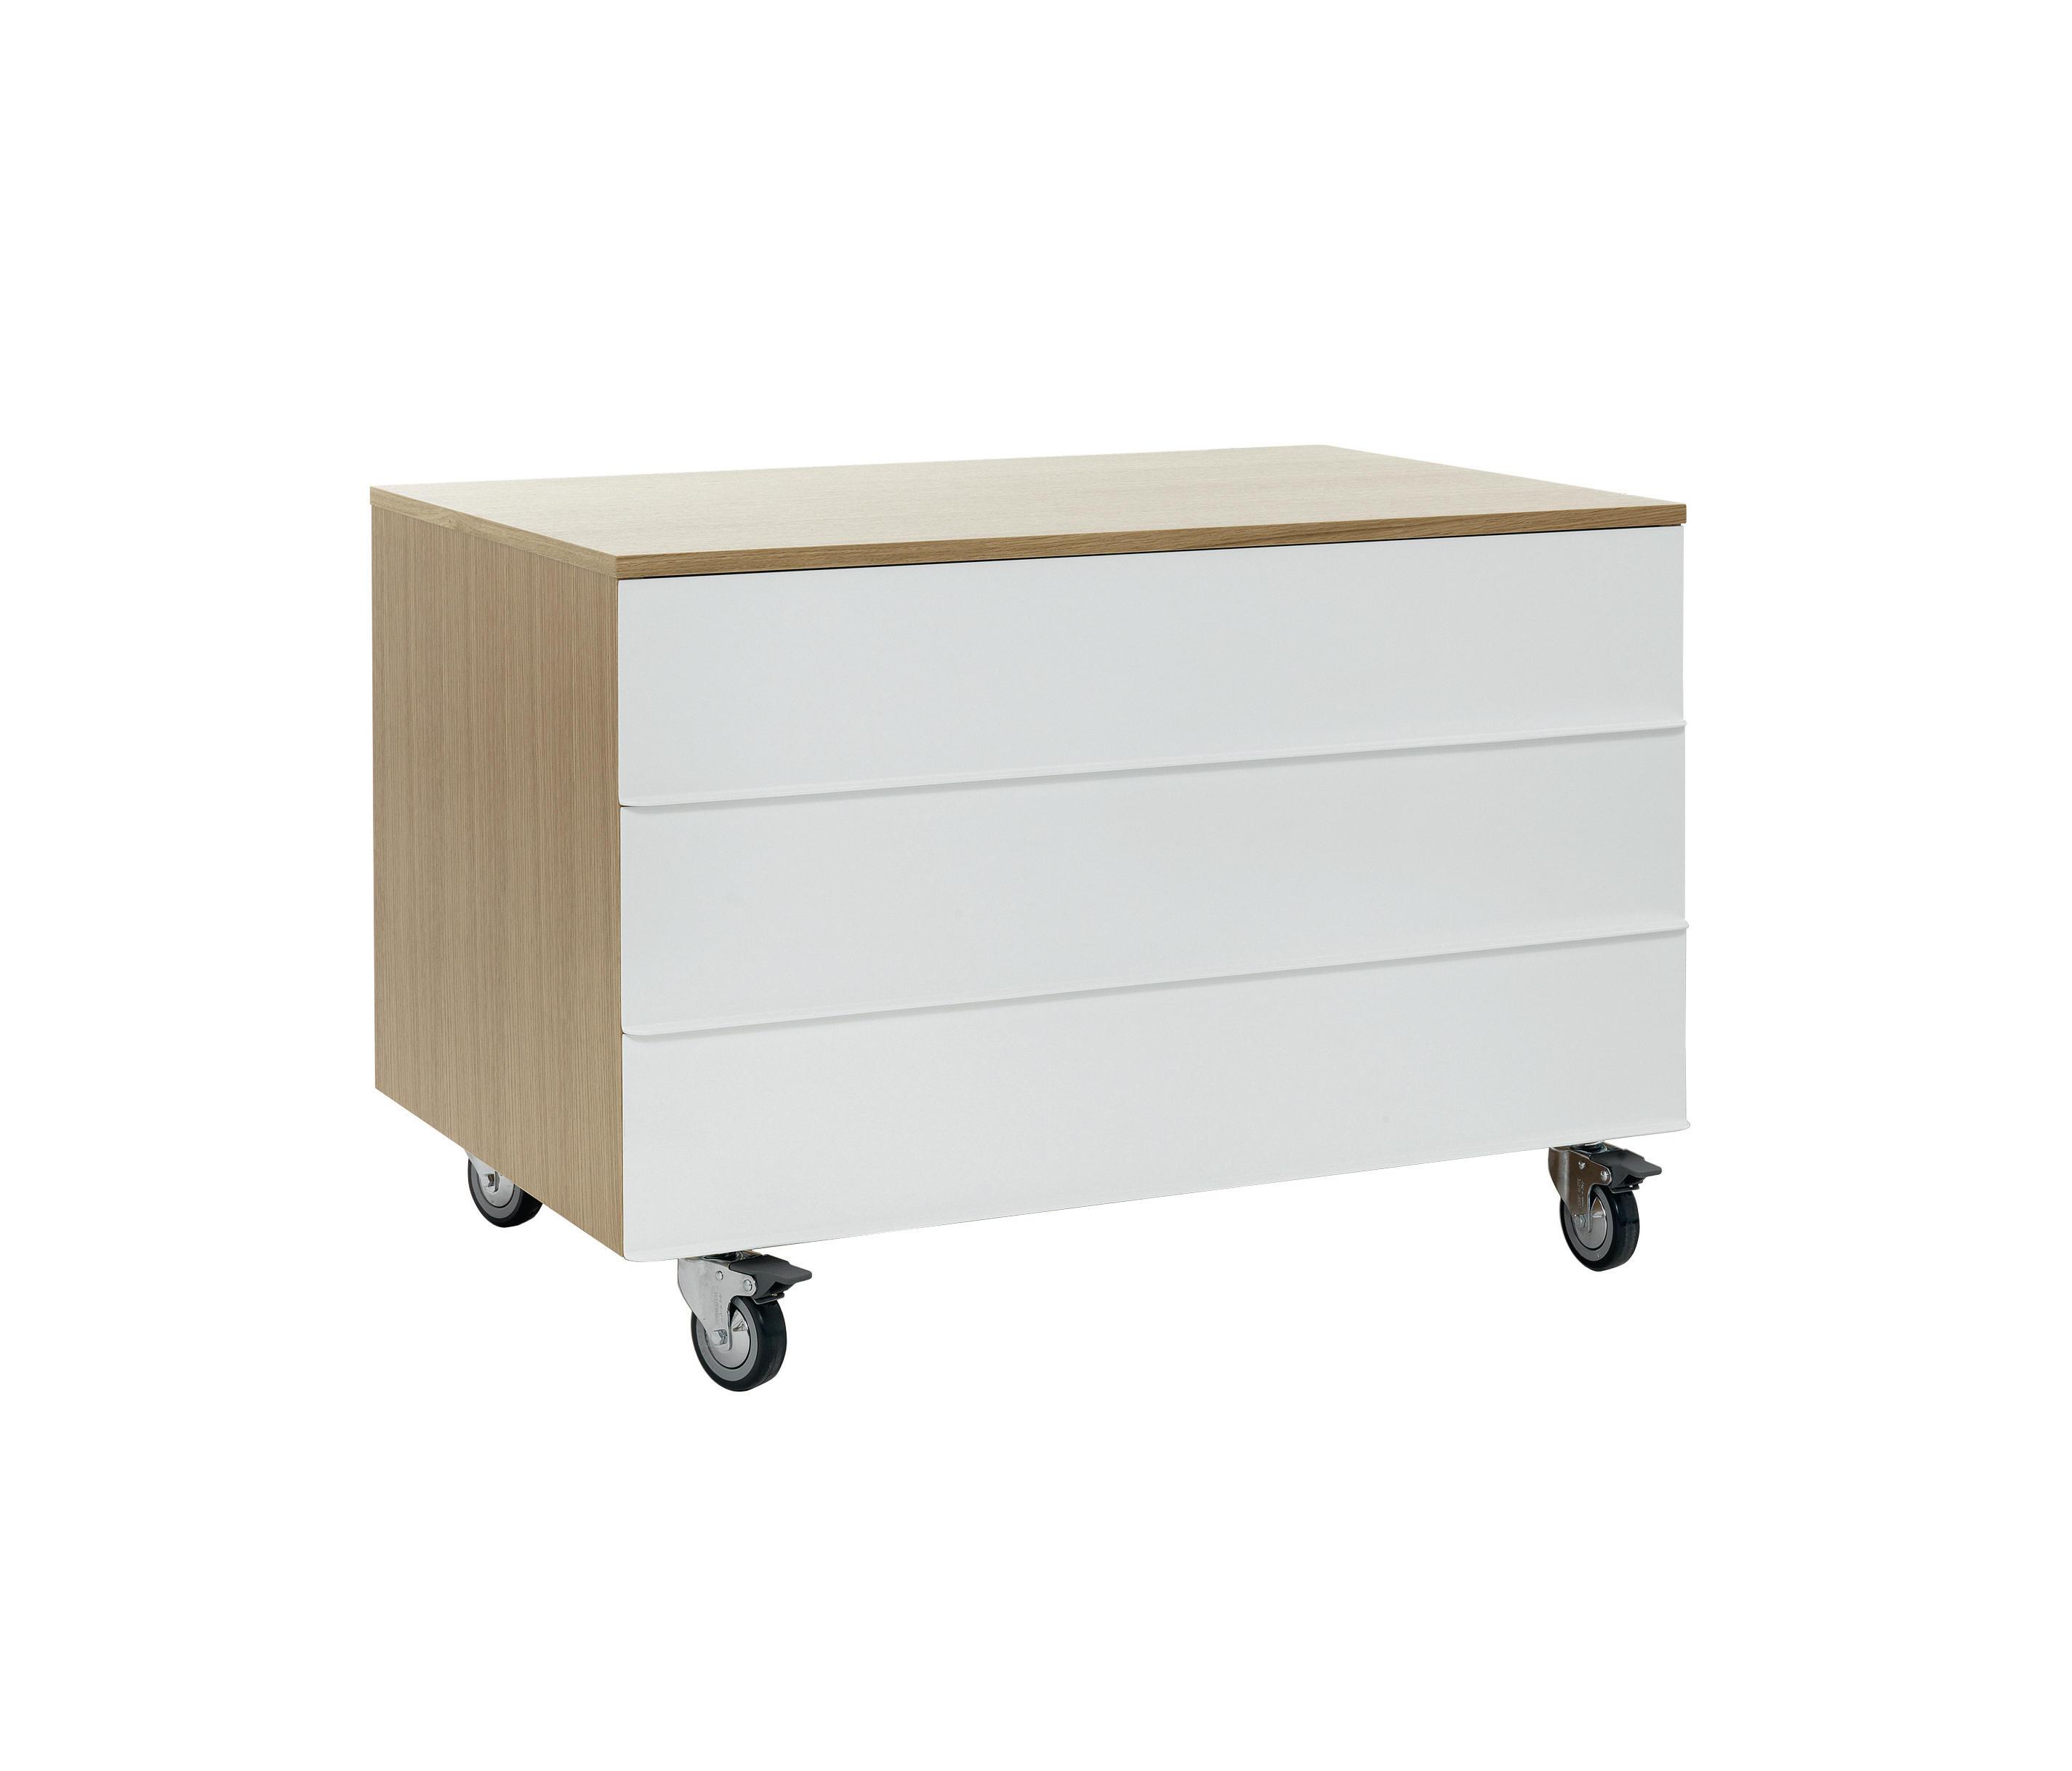 Уценка 1l5 мебель шкаф-гриденция / ta06a 1600x470x760, RL-309 (T)